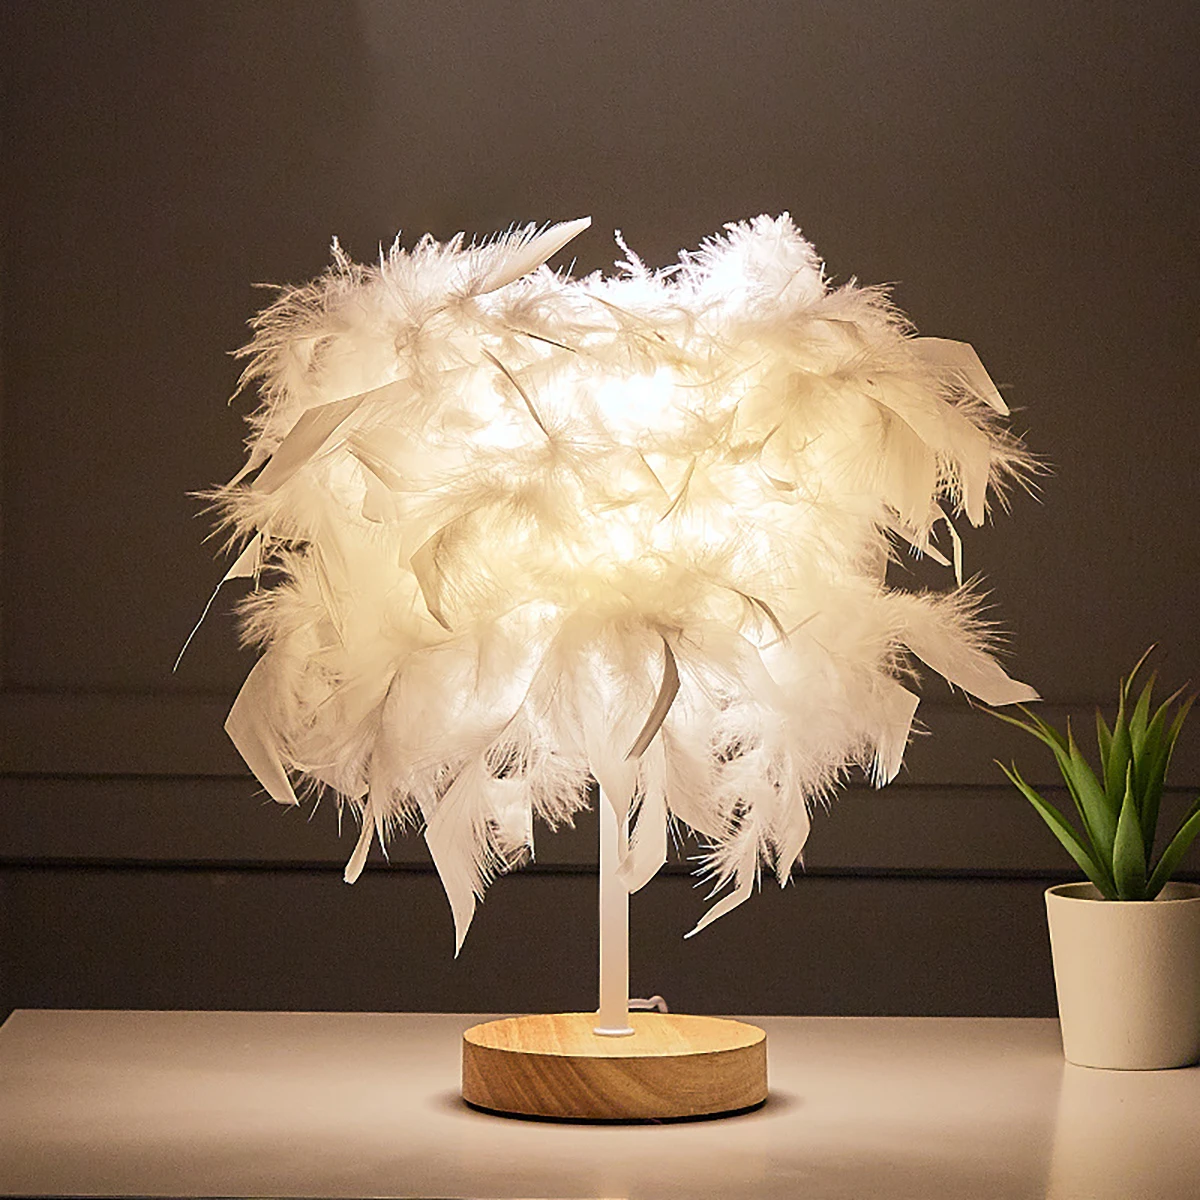 

Хрустальная настольная лампа с перьями, светодиодный ночсветильник, защита глаз, домашний декор, новая настольная лампа с белыми перьями, р...